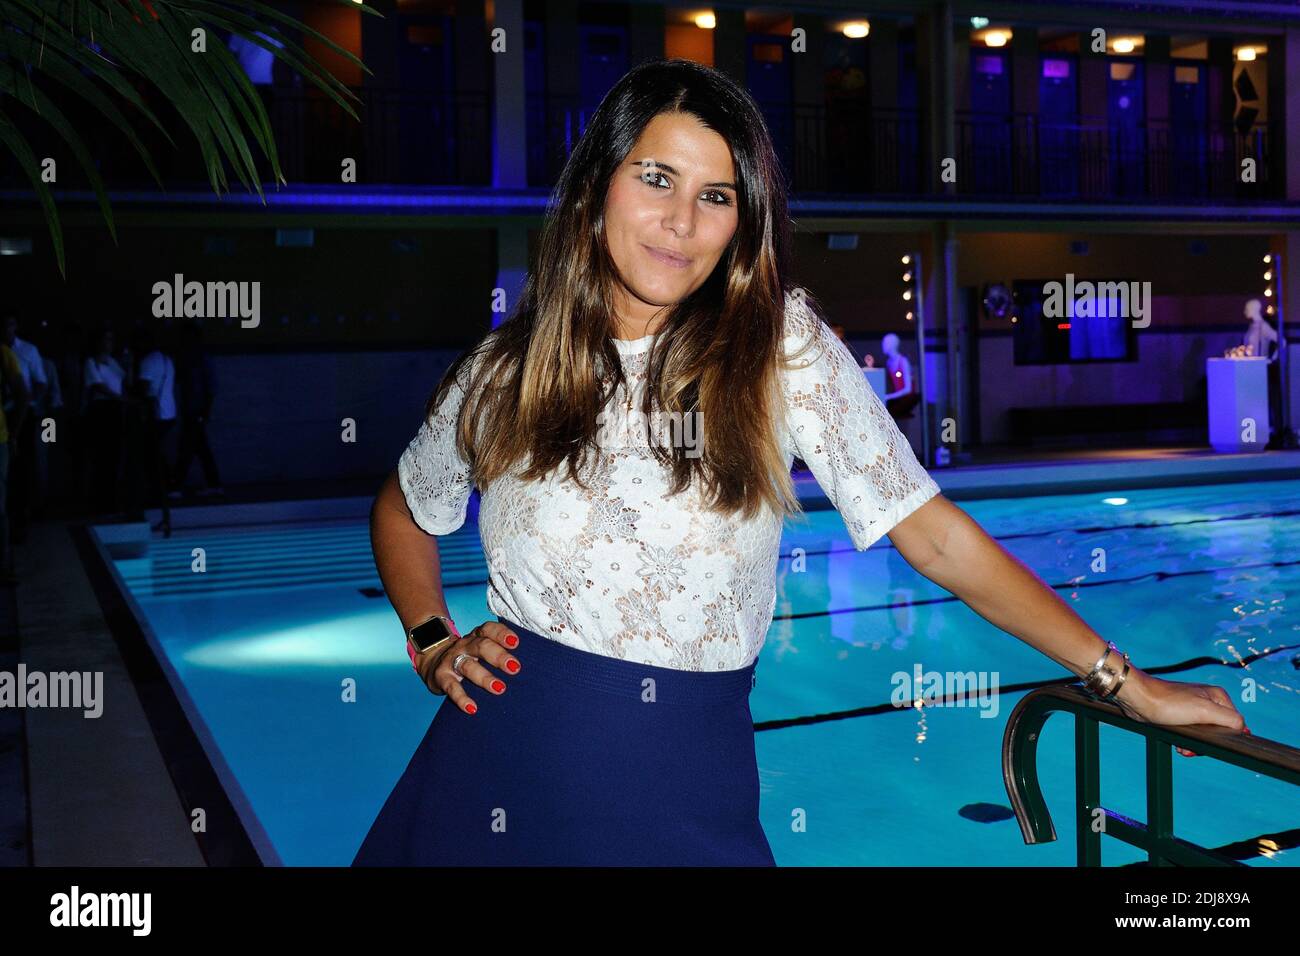 Exclusif. Karine Ferri participe à la fête de la piscine Fitbit à la piscine Molitor (piscine Molitor) à Paris, France, le 13 septembre 2016. Photo d'Aurore Marechal/ABACAPRESS.COM Banque D'Images